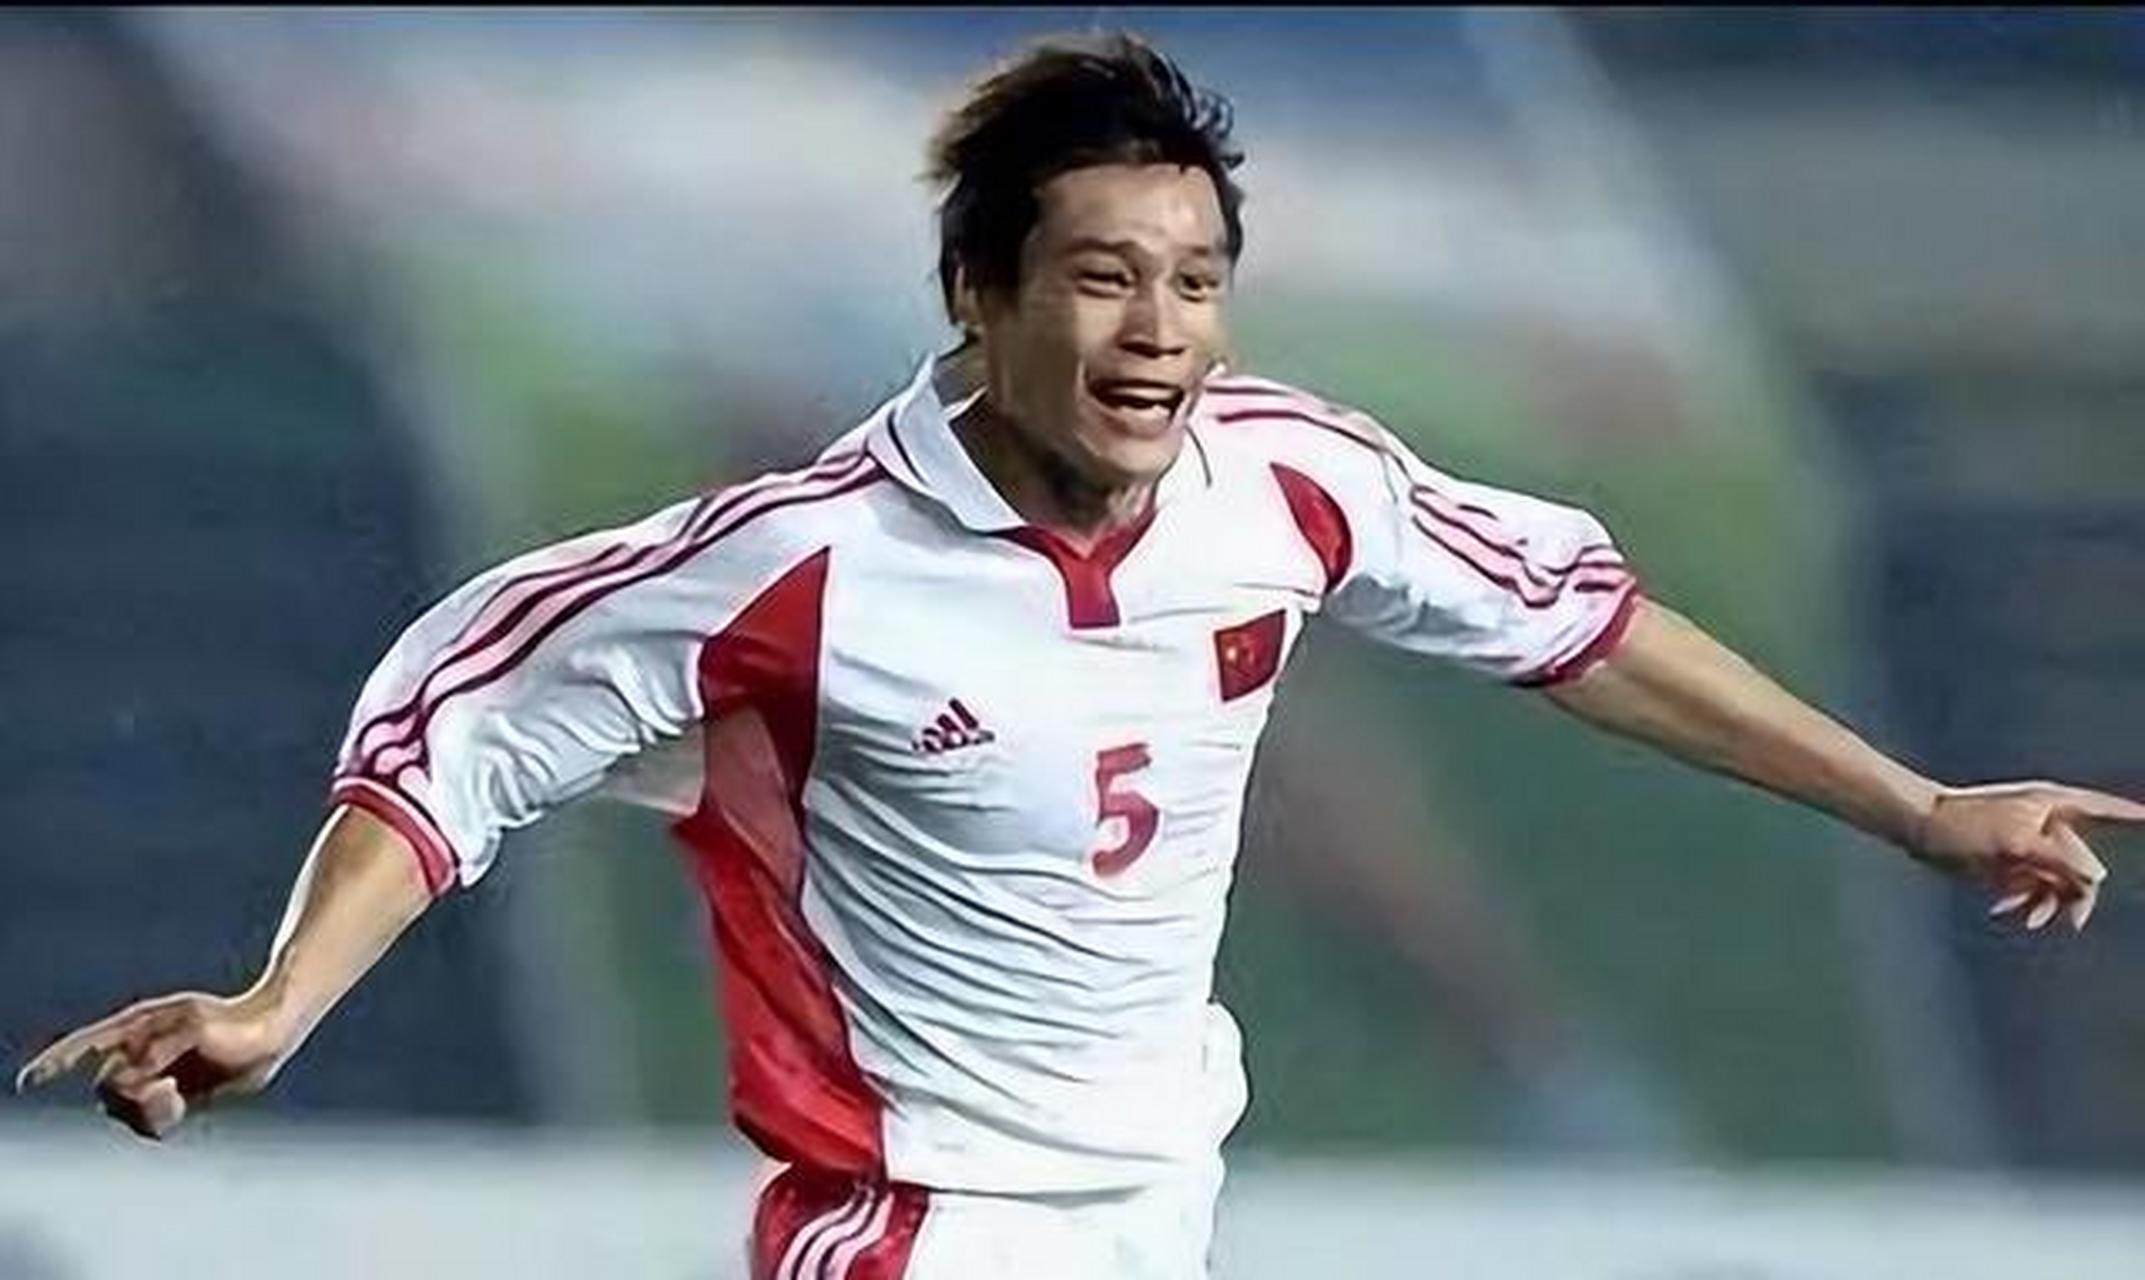 范志毅是中国职业足球运动员,曾是中国国家足球队队长,司职后卫,是